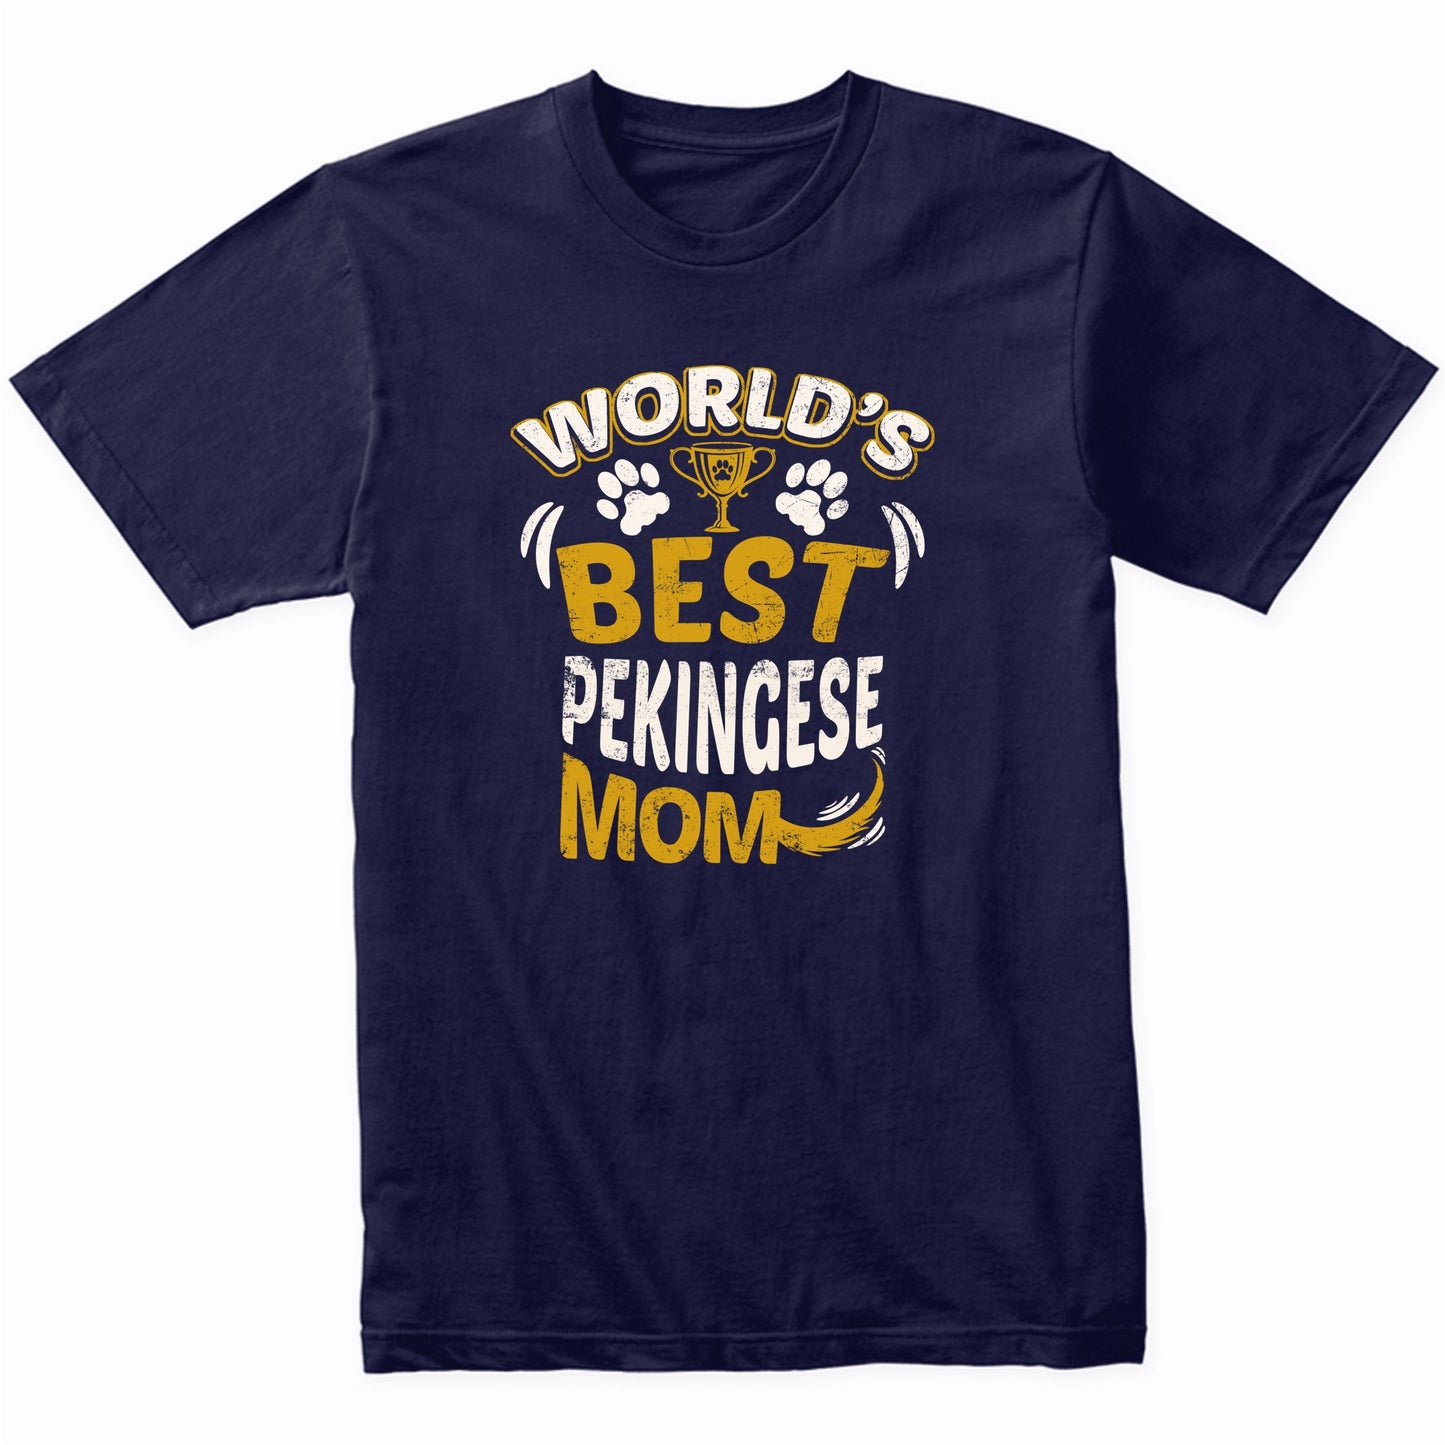 World's Best Pekingese Mom Graphic T-Shirt